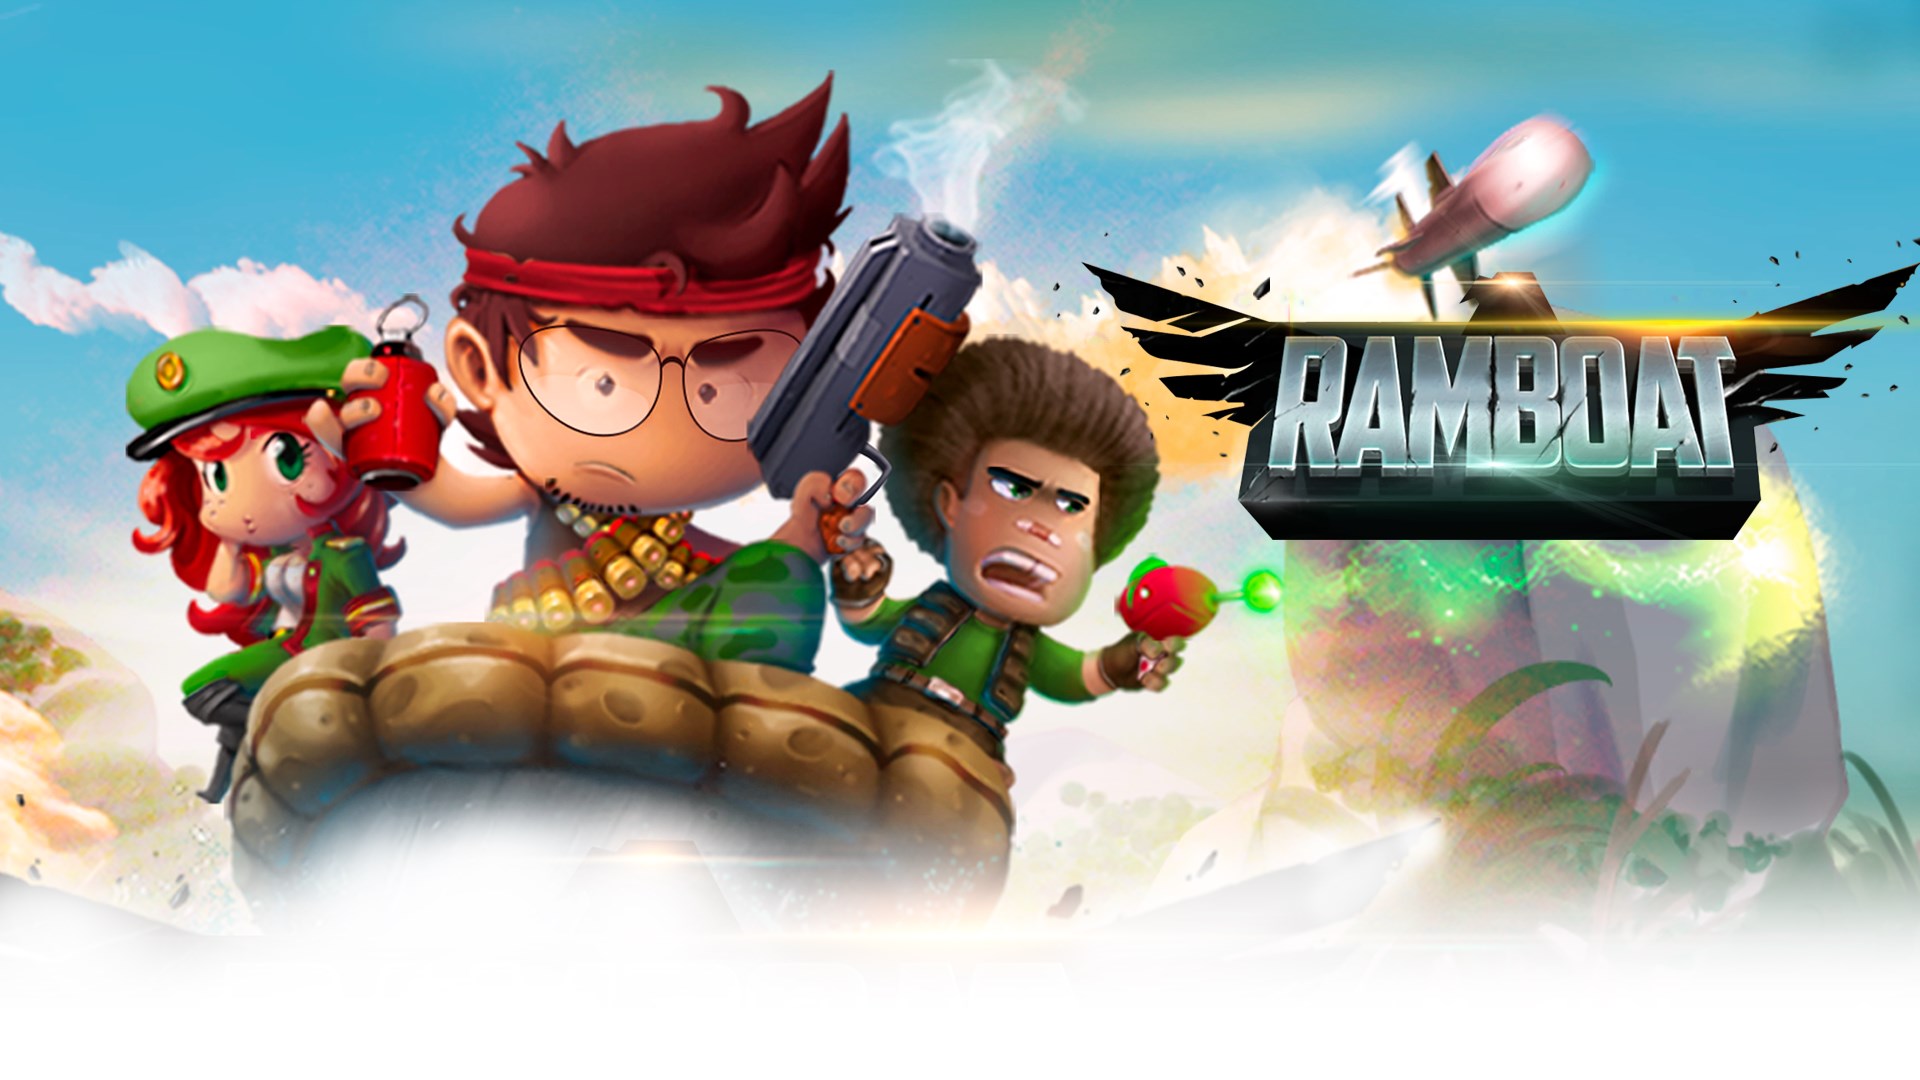 ดาวน์โหลด Ramboat – Jumping Shooter Game (MOD, Unlimited Gold / Gems) ฟรีบน Android